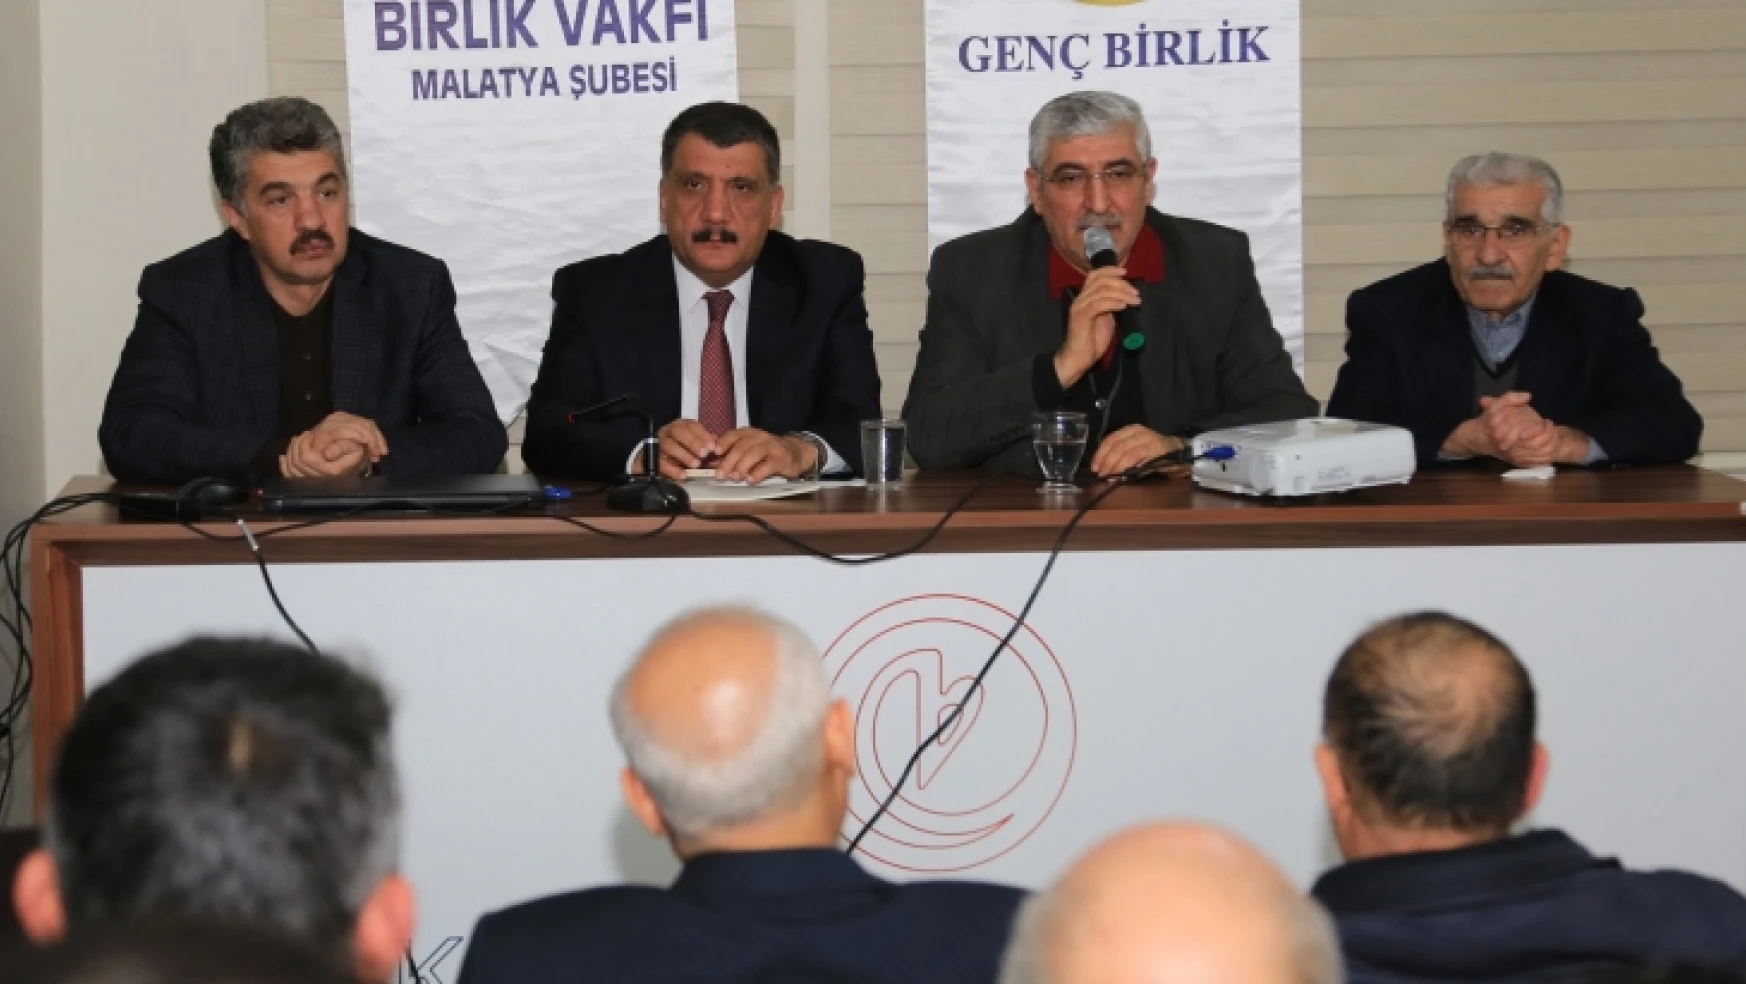 Gürkan Birlik Vakfı Malatya Şubesinin konuğu